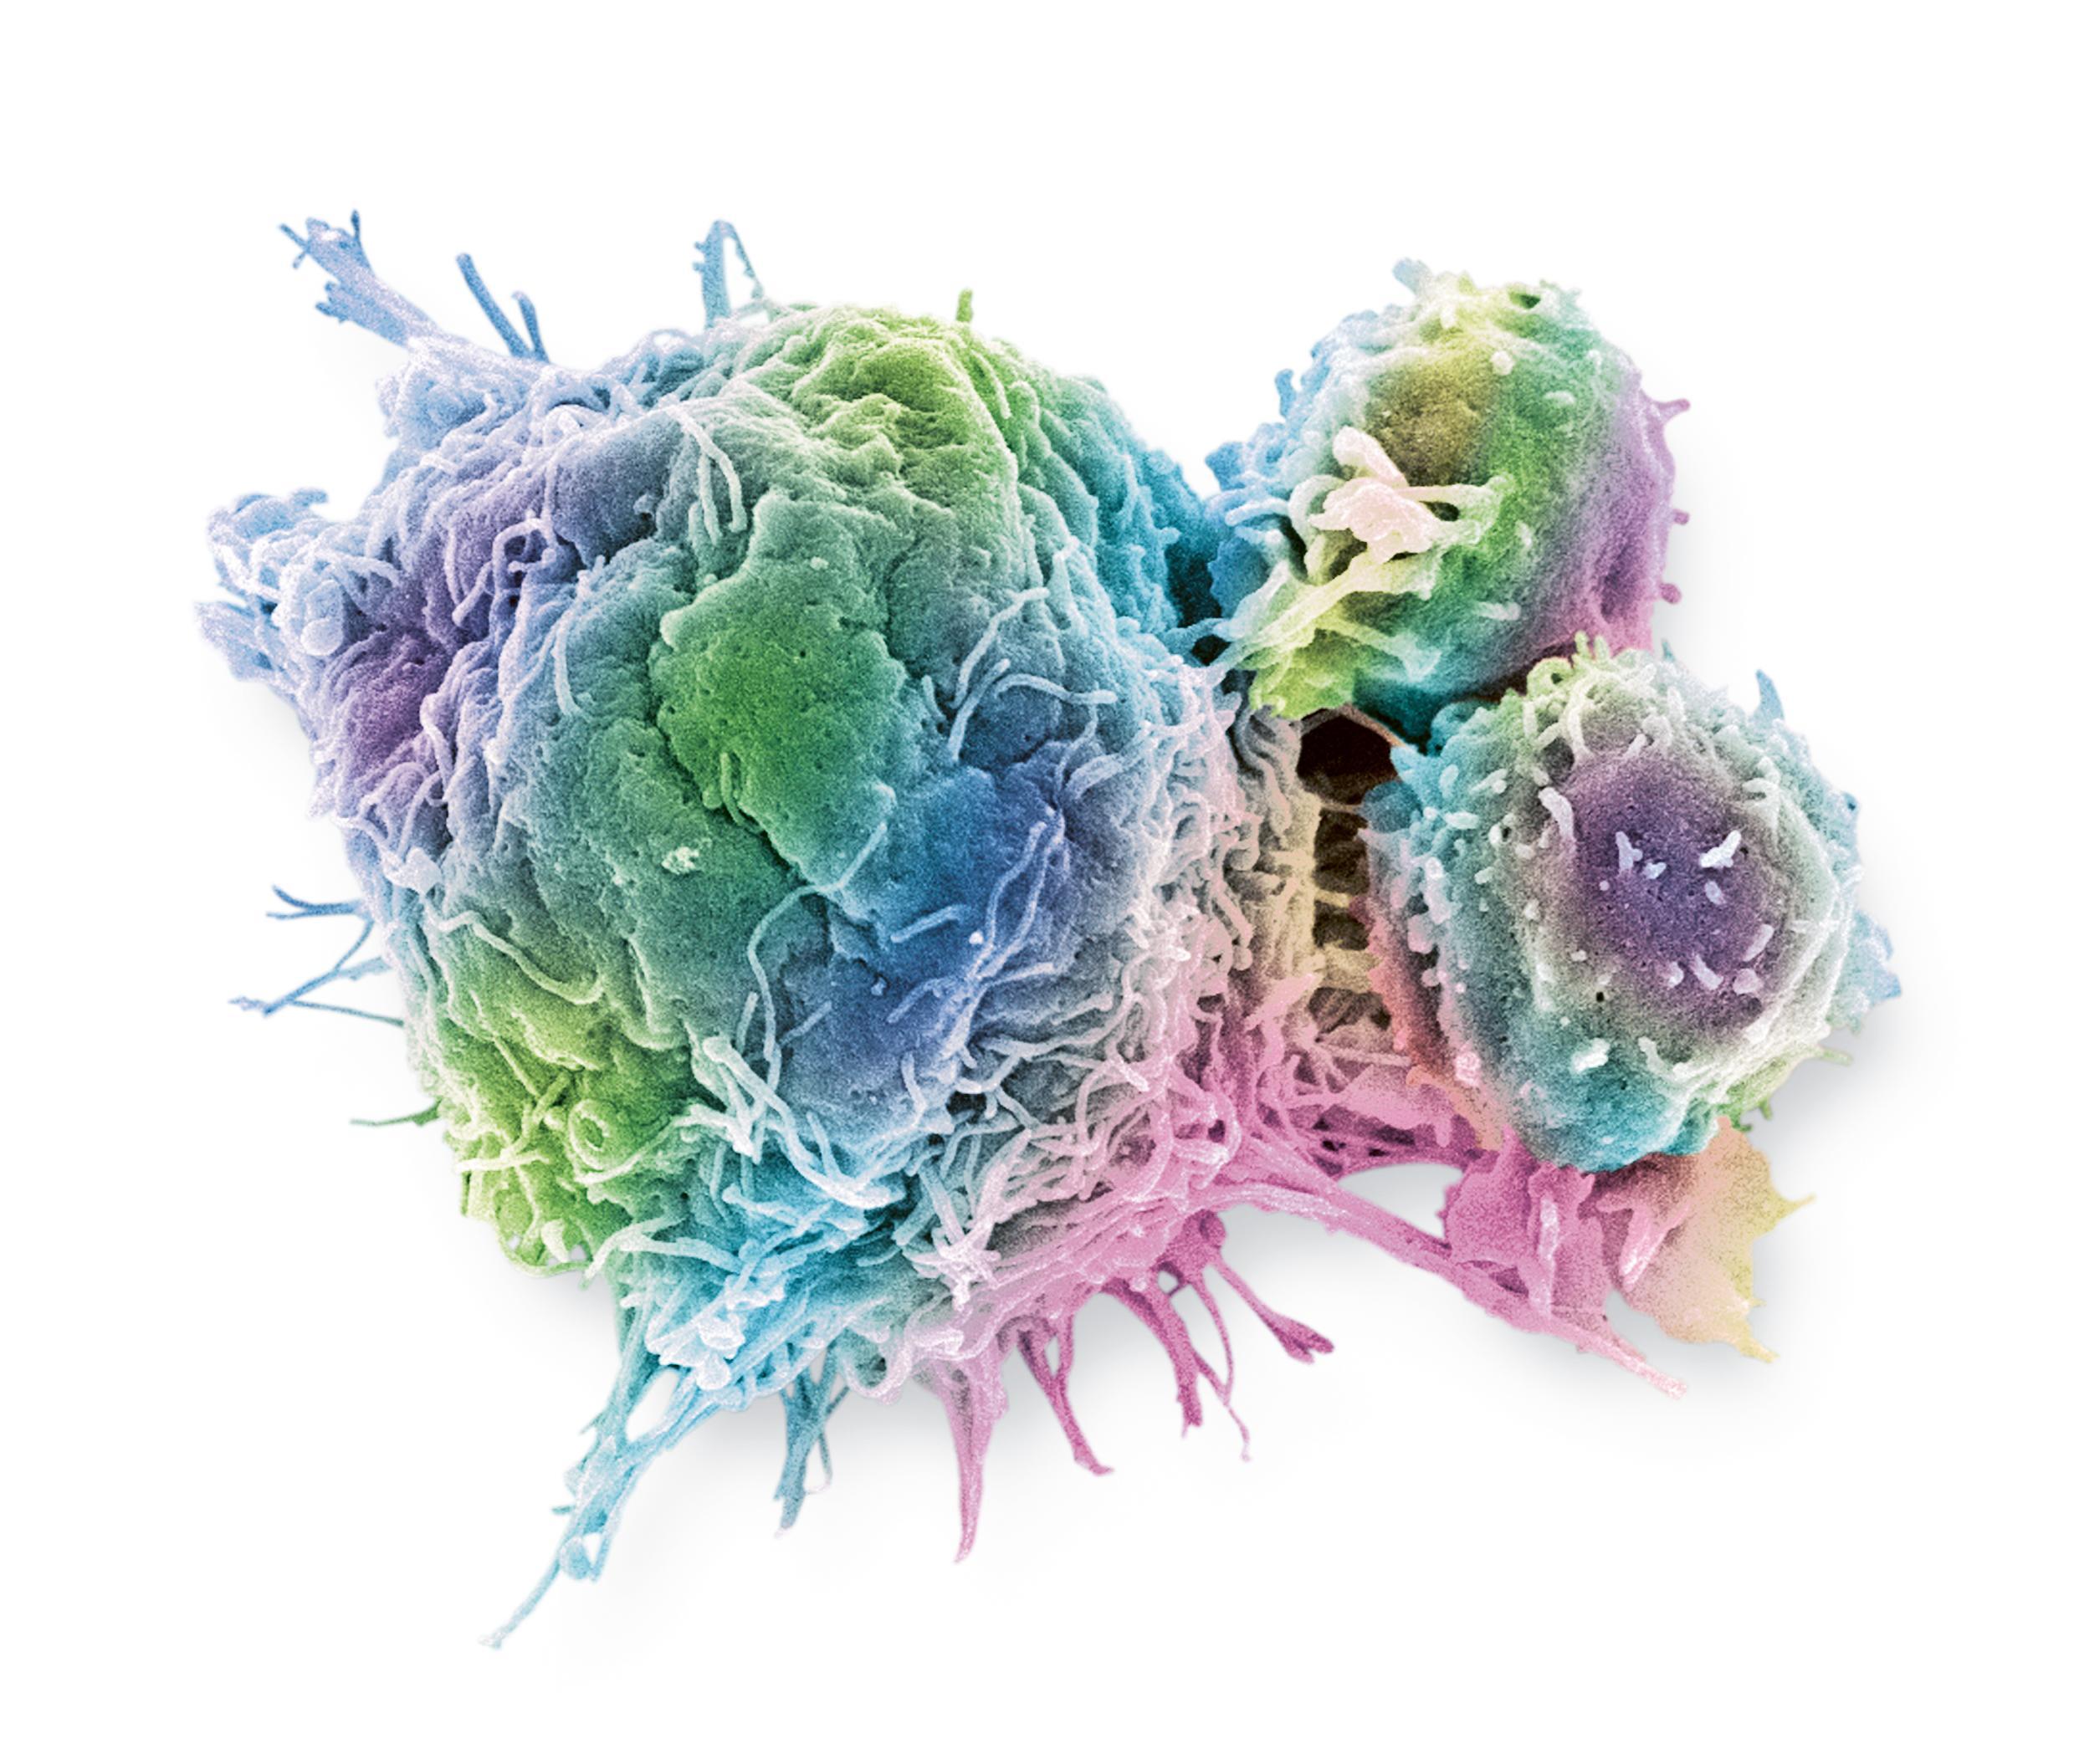 Cellule cancéreuse colorectale (image grossie 3000x). Lymphocytes T (petites cellules rondes) attachés à une cellule cancéreuse (image grossie 5000x).